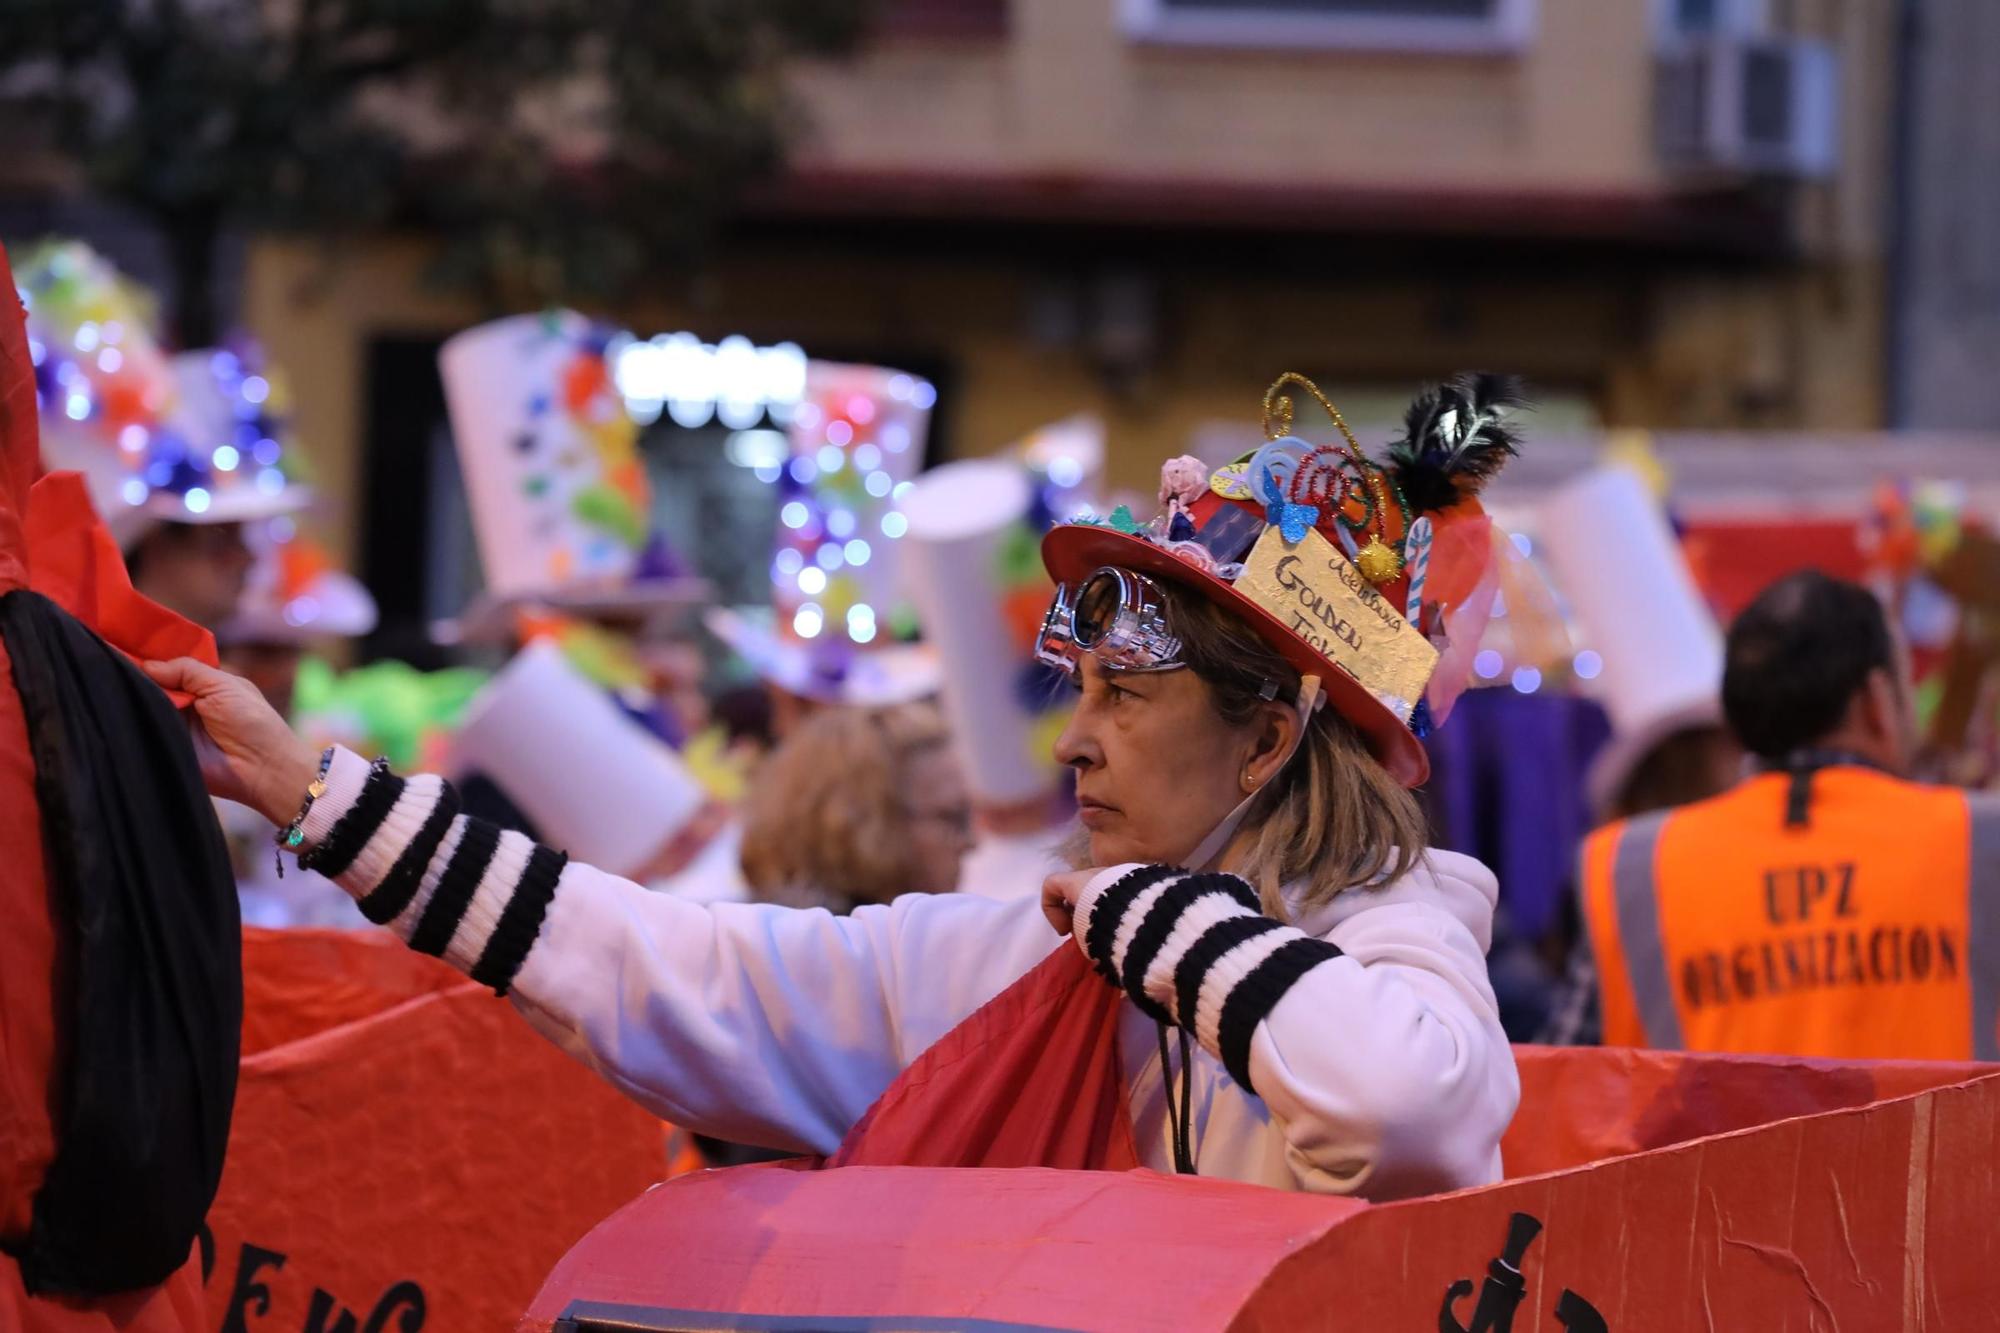 Gran ambiente de carnaval en las calles de Zaragoza